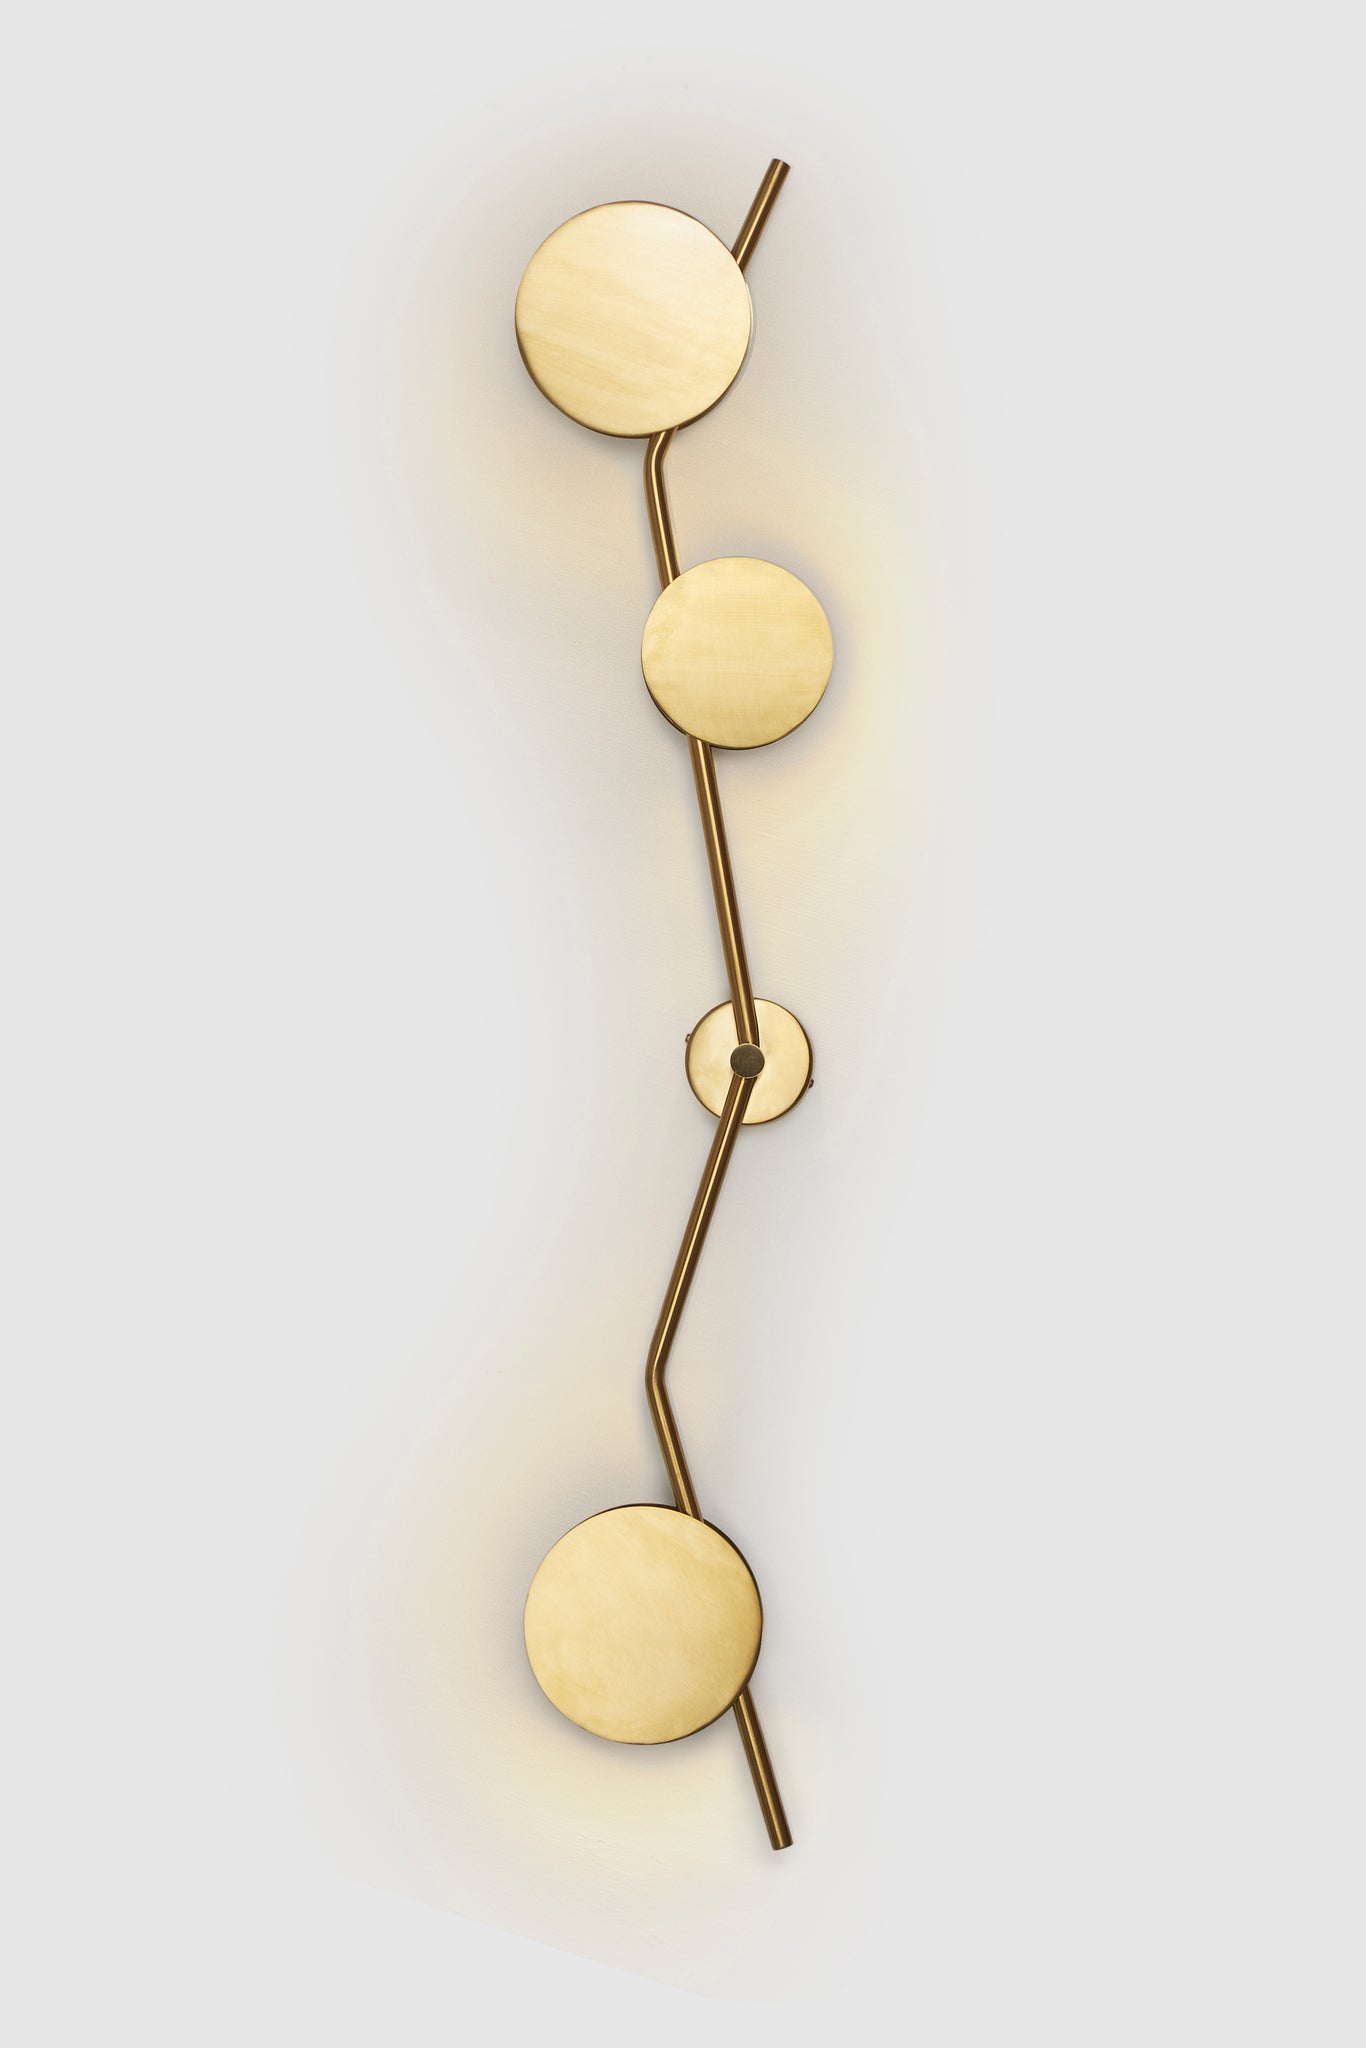 Lino Wall Lamp - Gold